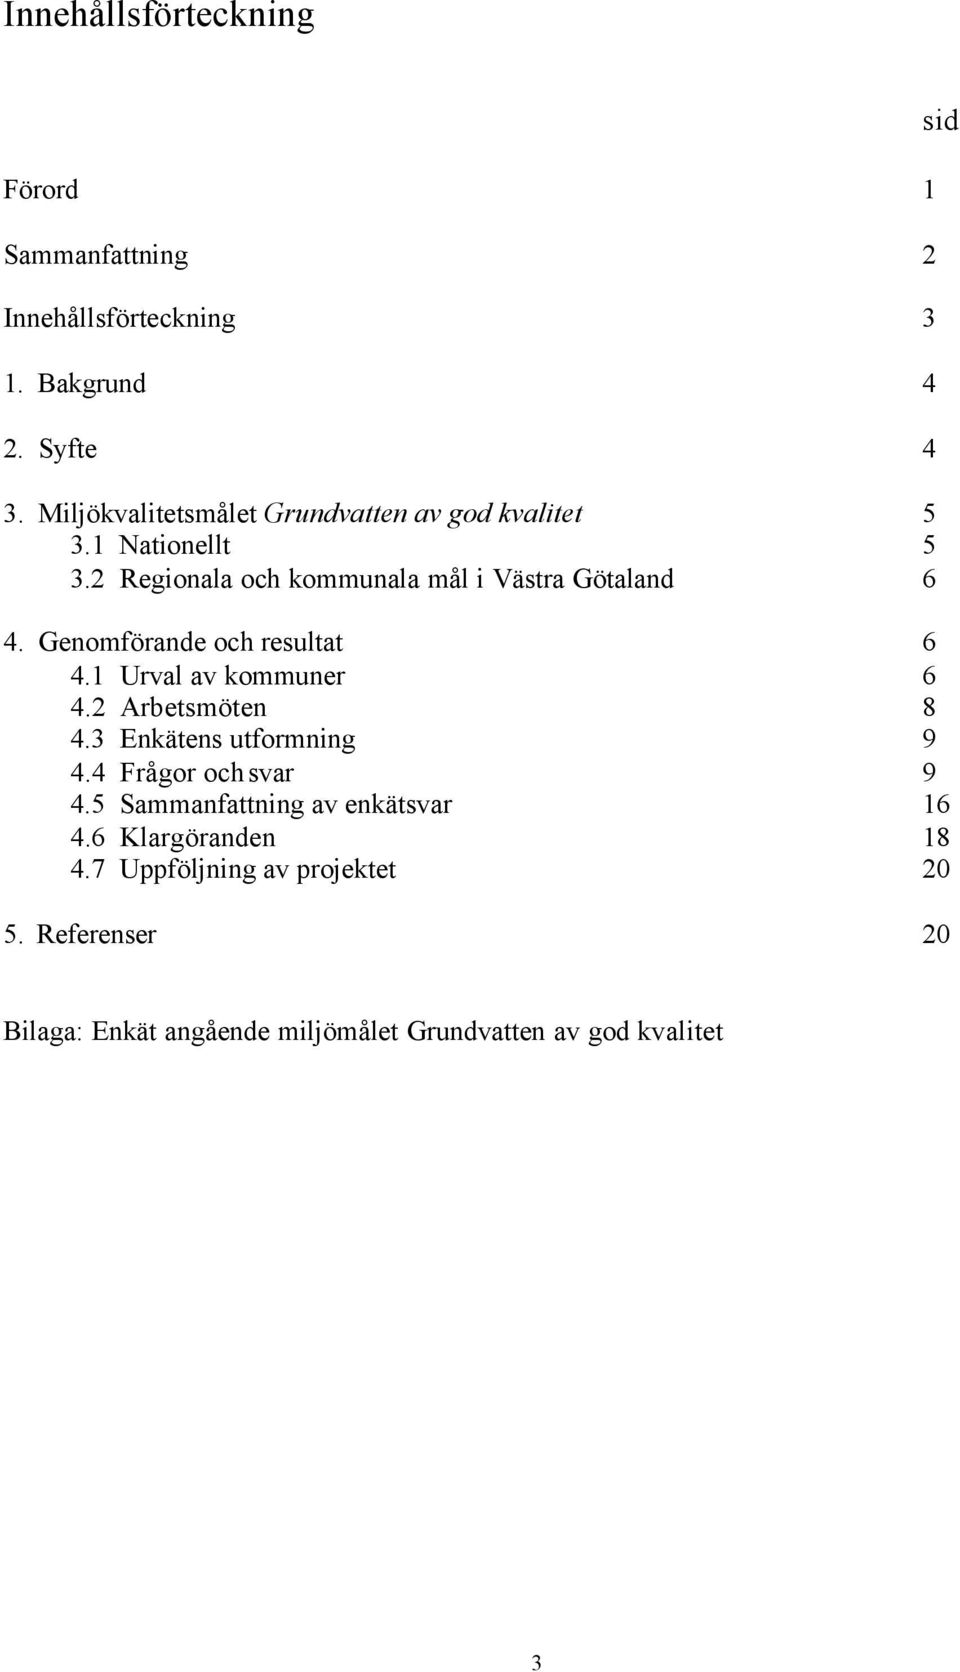 Genomförande och resultat 6 4.1 Urval av kommuner 6 4.2 Arbetsmöten 8 4.3 Enkätens utformning 9 4.4 Frågor och svar 9 4.